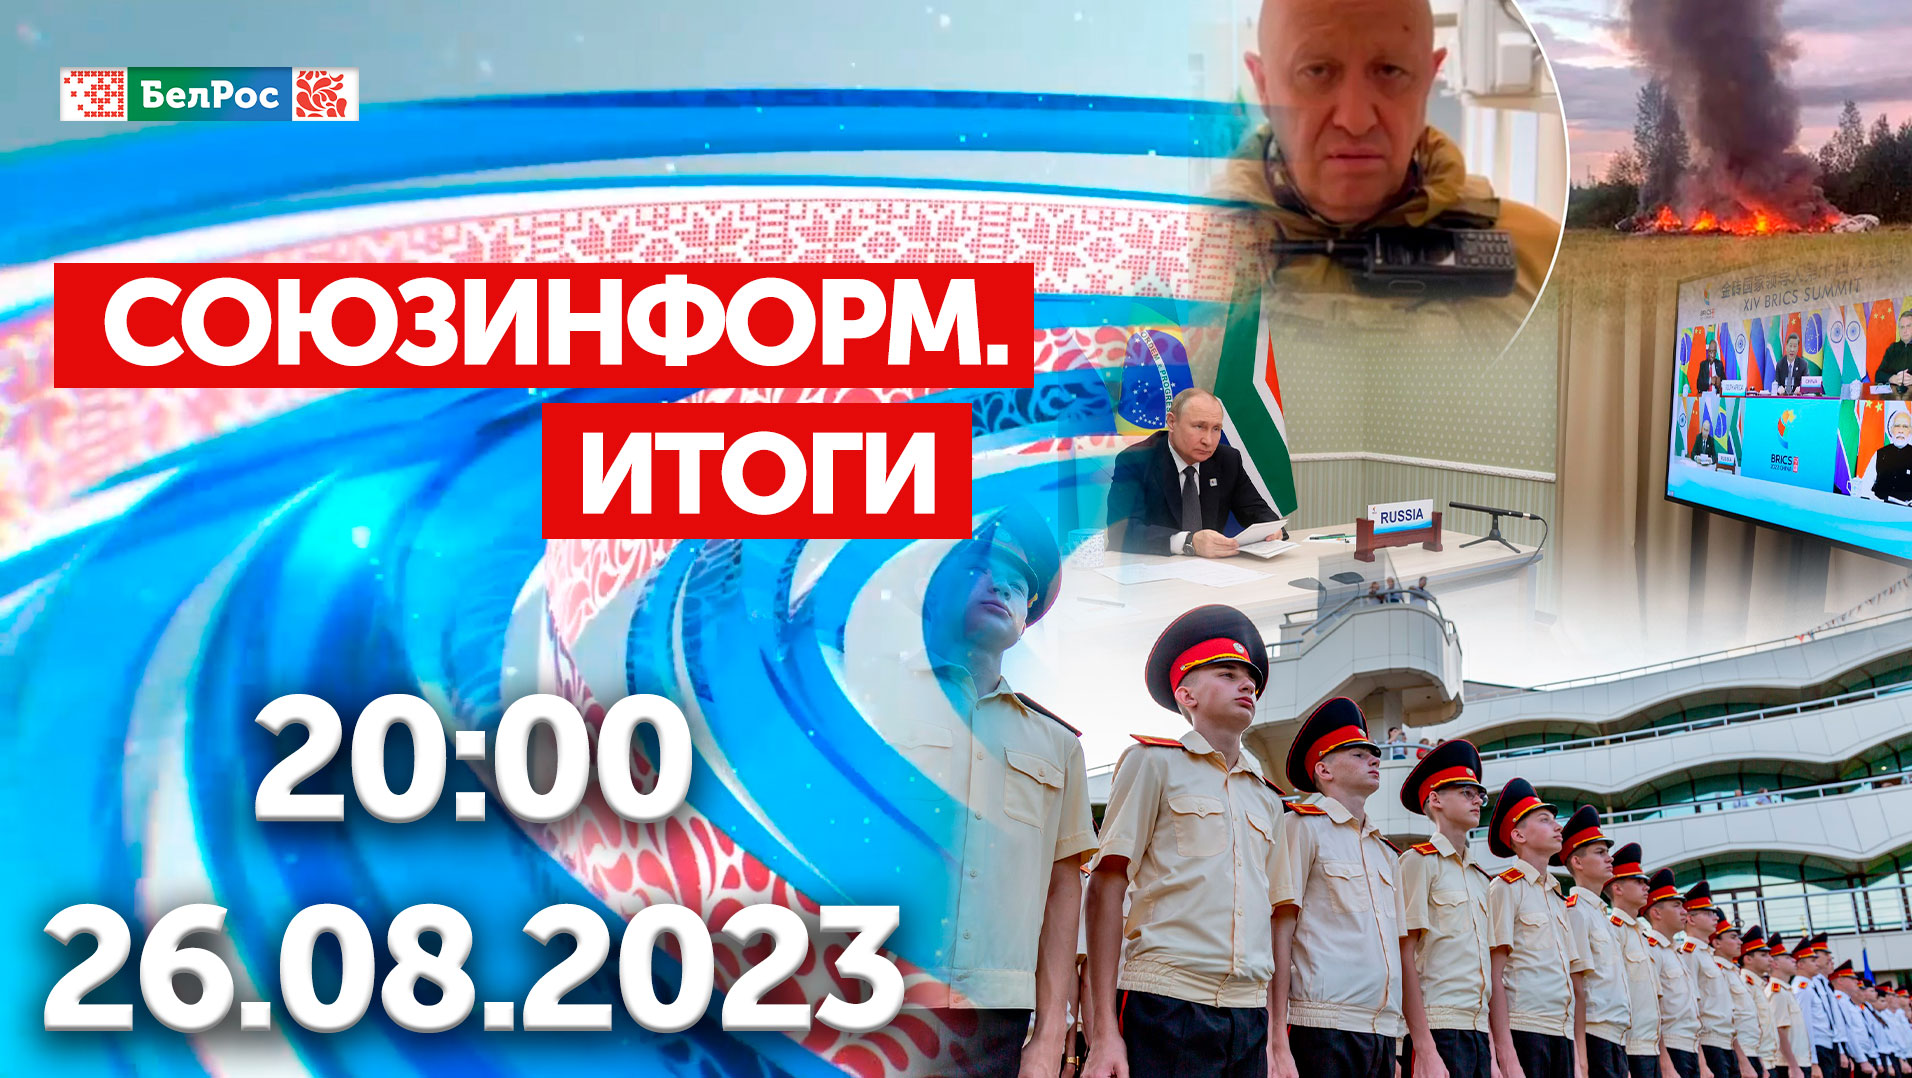 Итоги недели: Путин на саммите БРИКС / Пригожин погиб в авиакатастрофе / Юные патриоты в «Орлёнке»